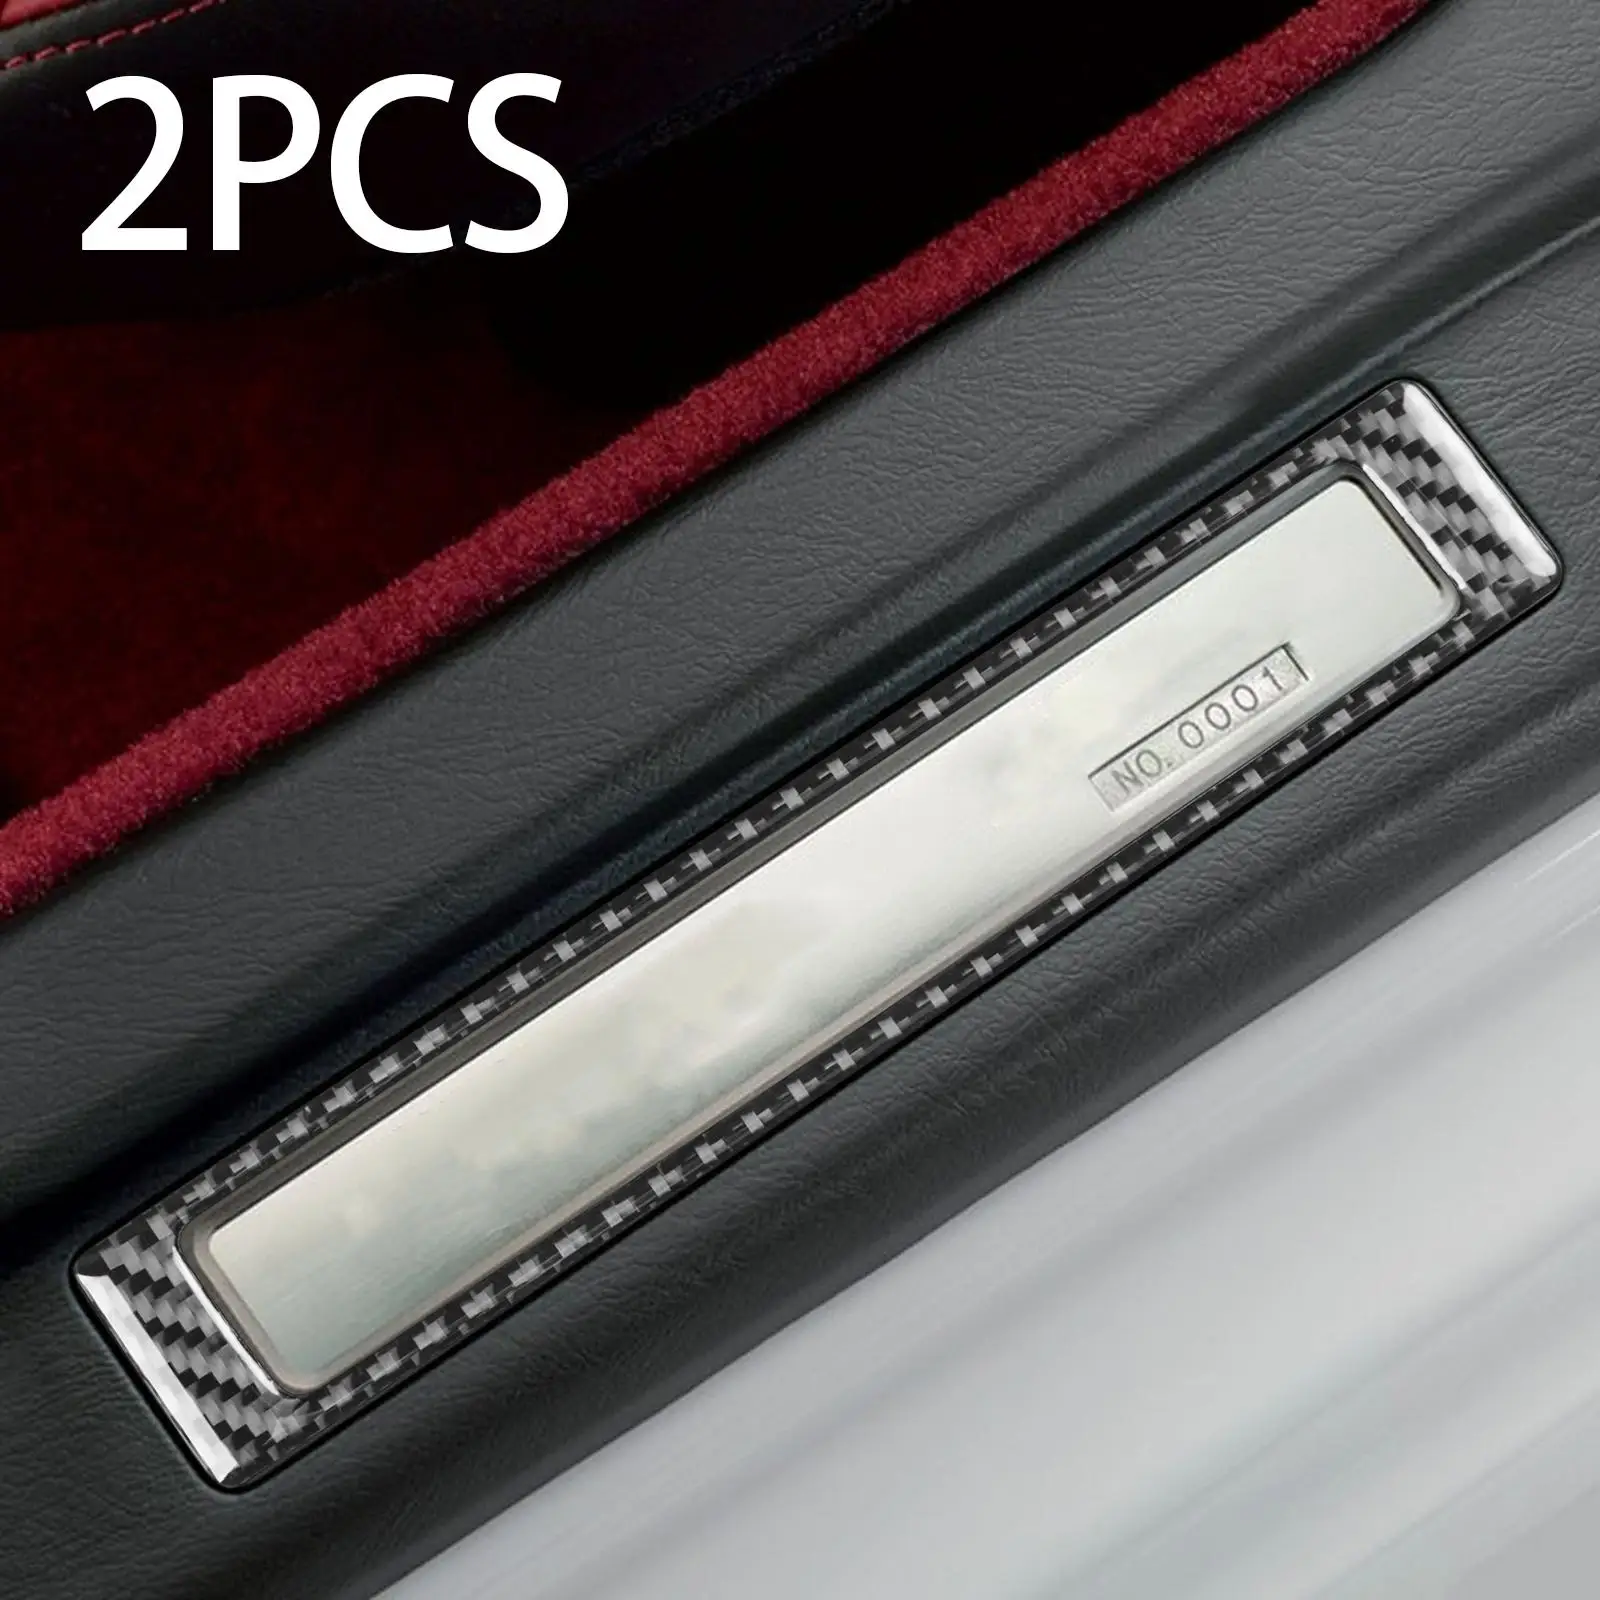 2Pcs Door Sill Accent Cover Trim Carbon Fiber Door Sill Protection for Honda S2000 Professional Car Accessories Repair Part